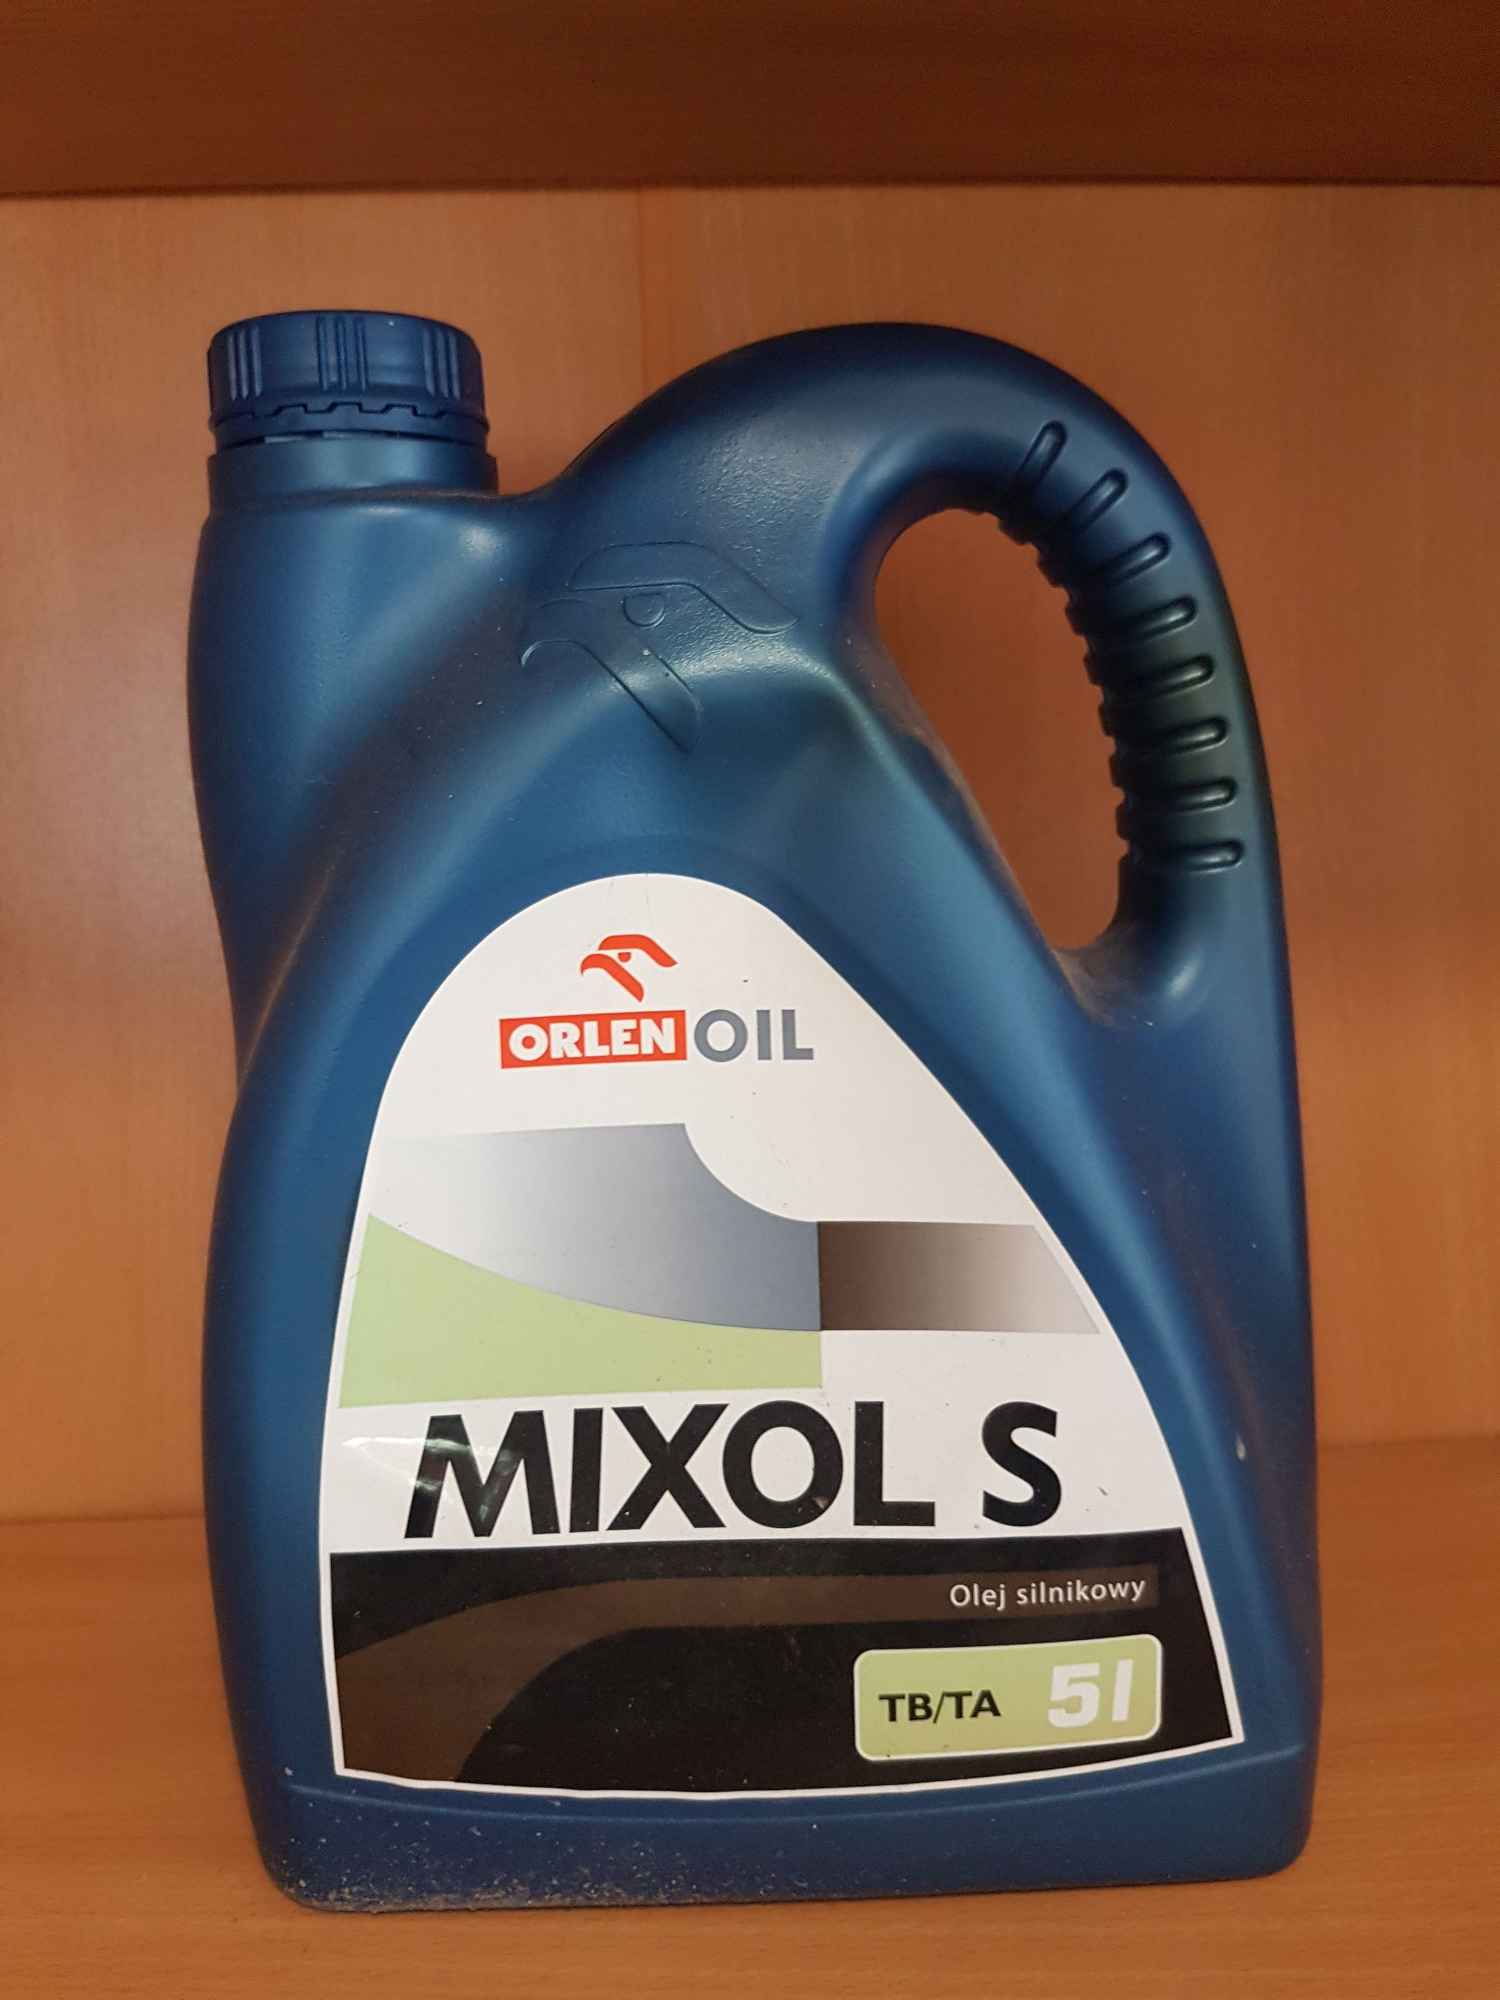 Orlen Mixol S olej silnikowy TB/TA 5l Tarnobrzeg - zdjęcie 1